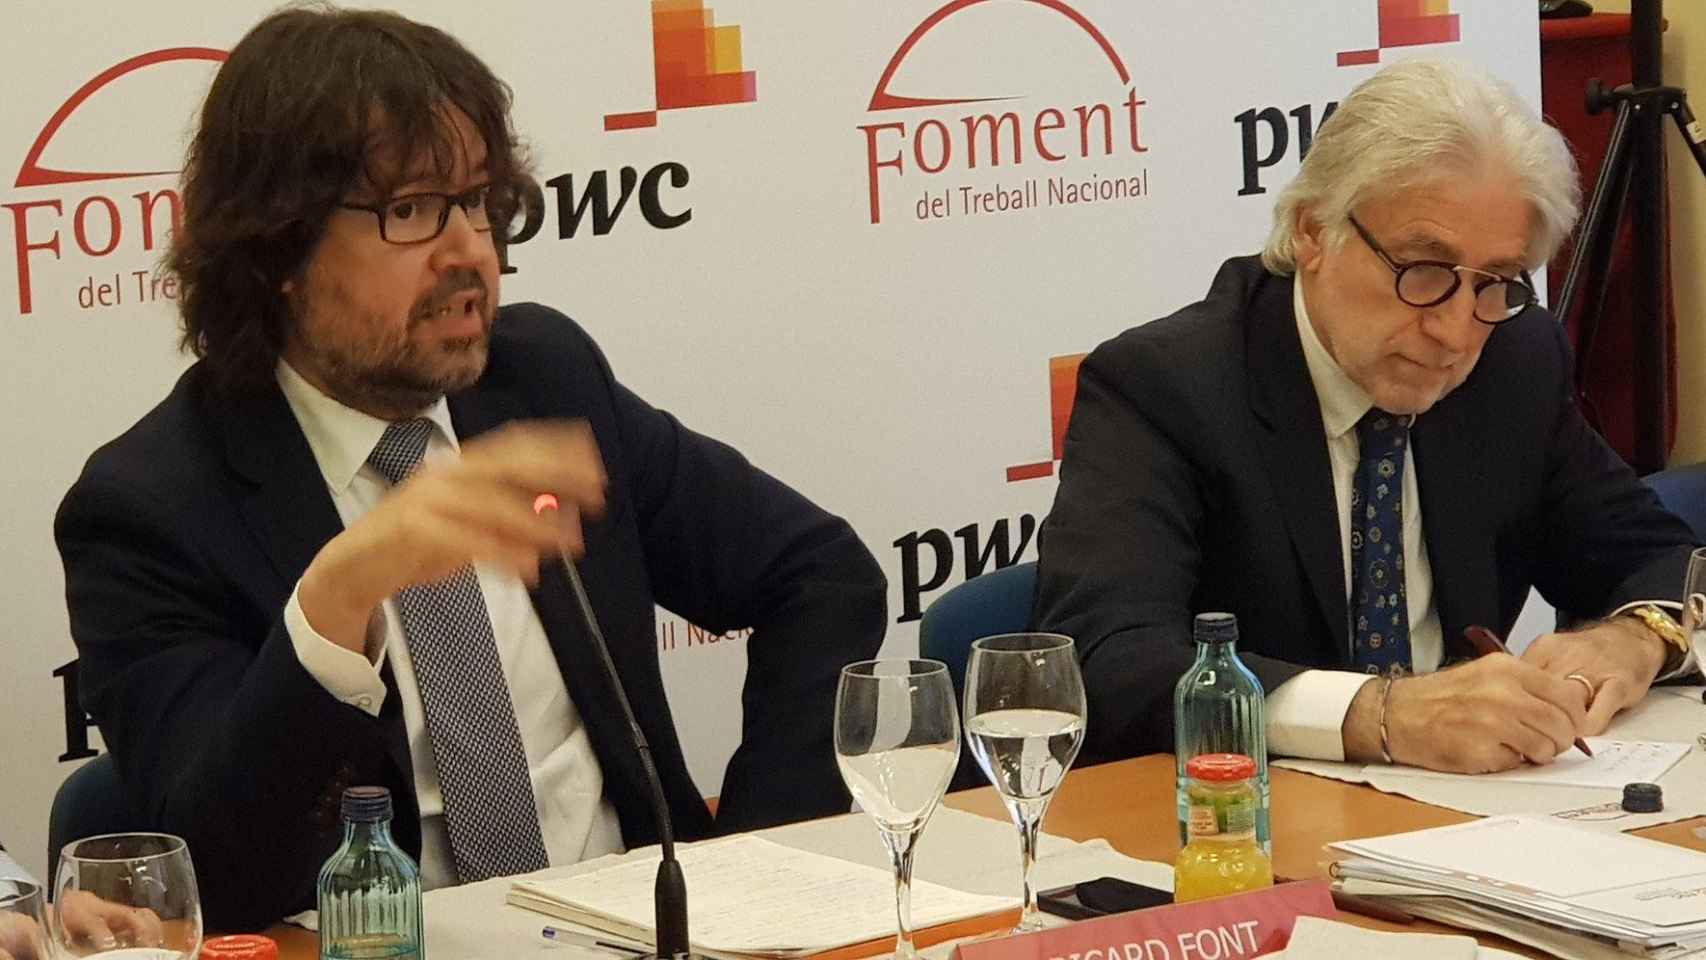 El presidente de FGC, Ricard Font, y el presidente de Foment, Josep Sánchez Llibre, en un desayuno informativo / TWITTER